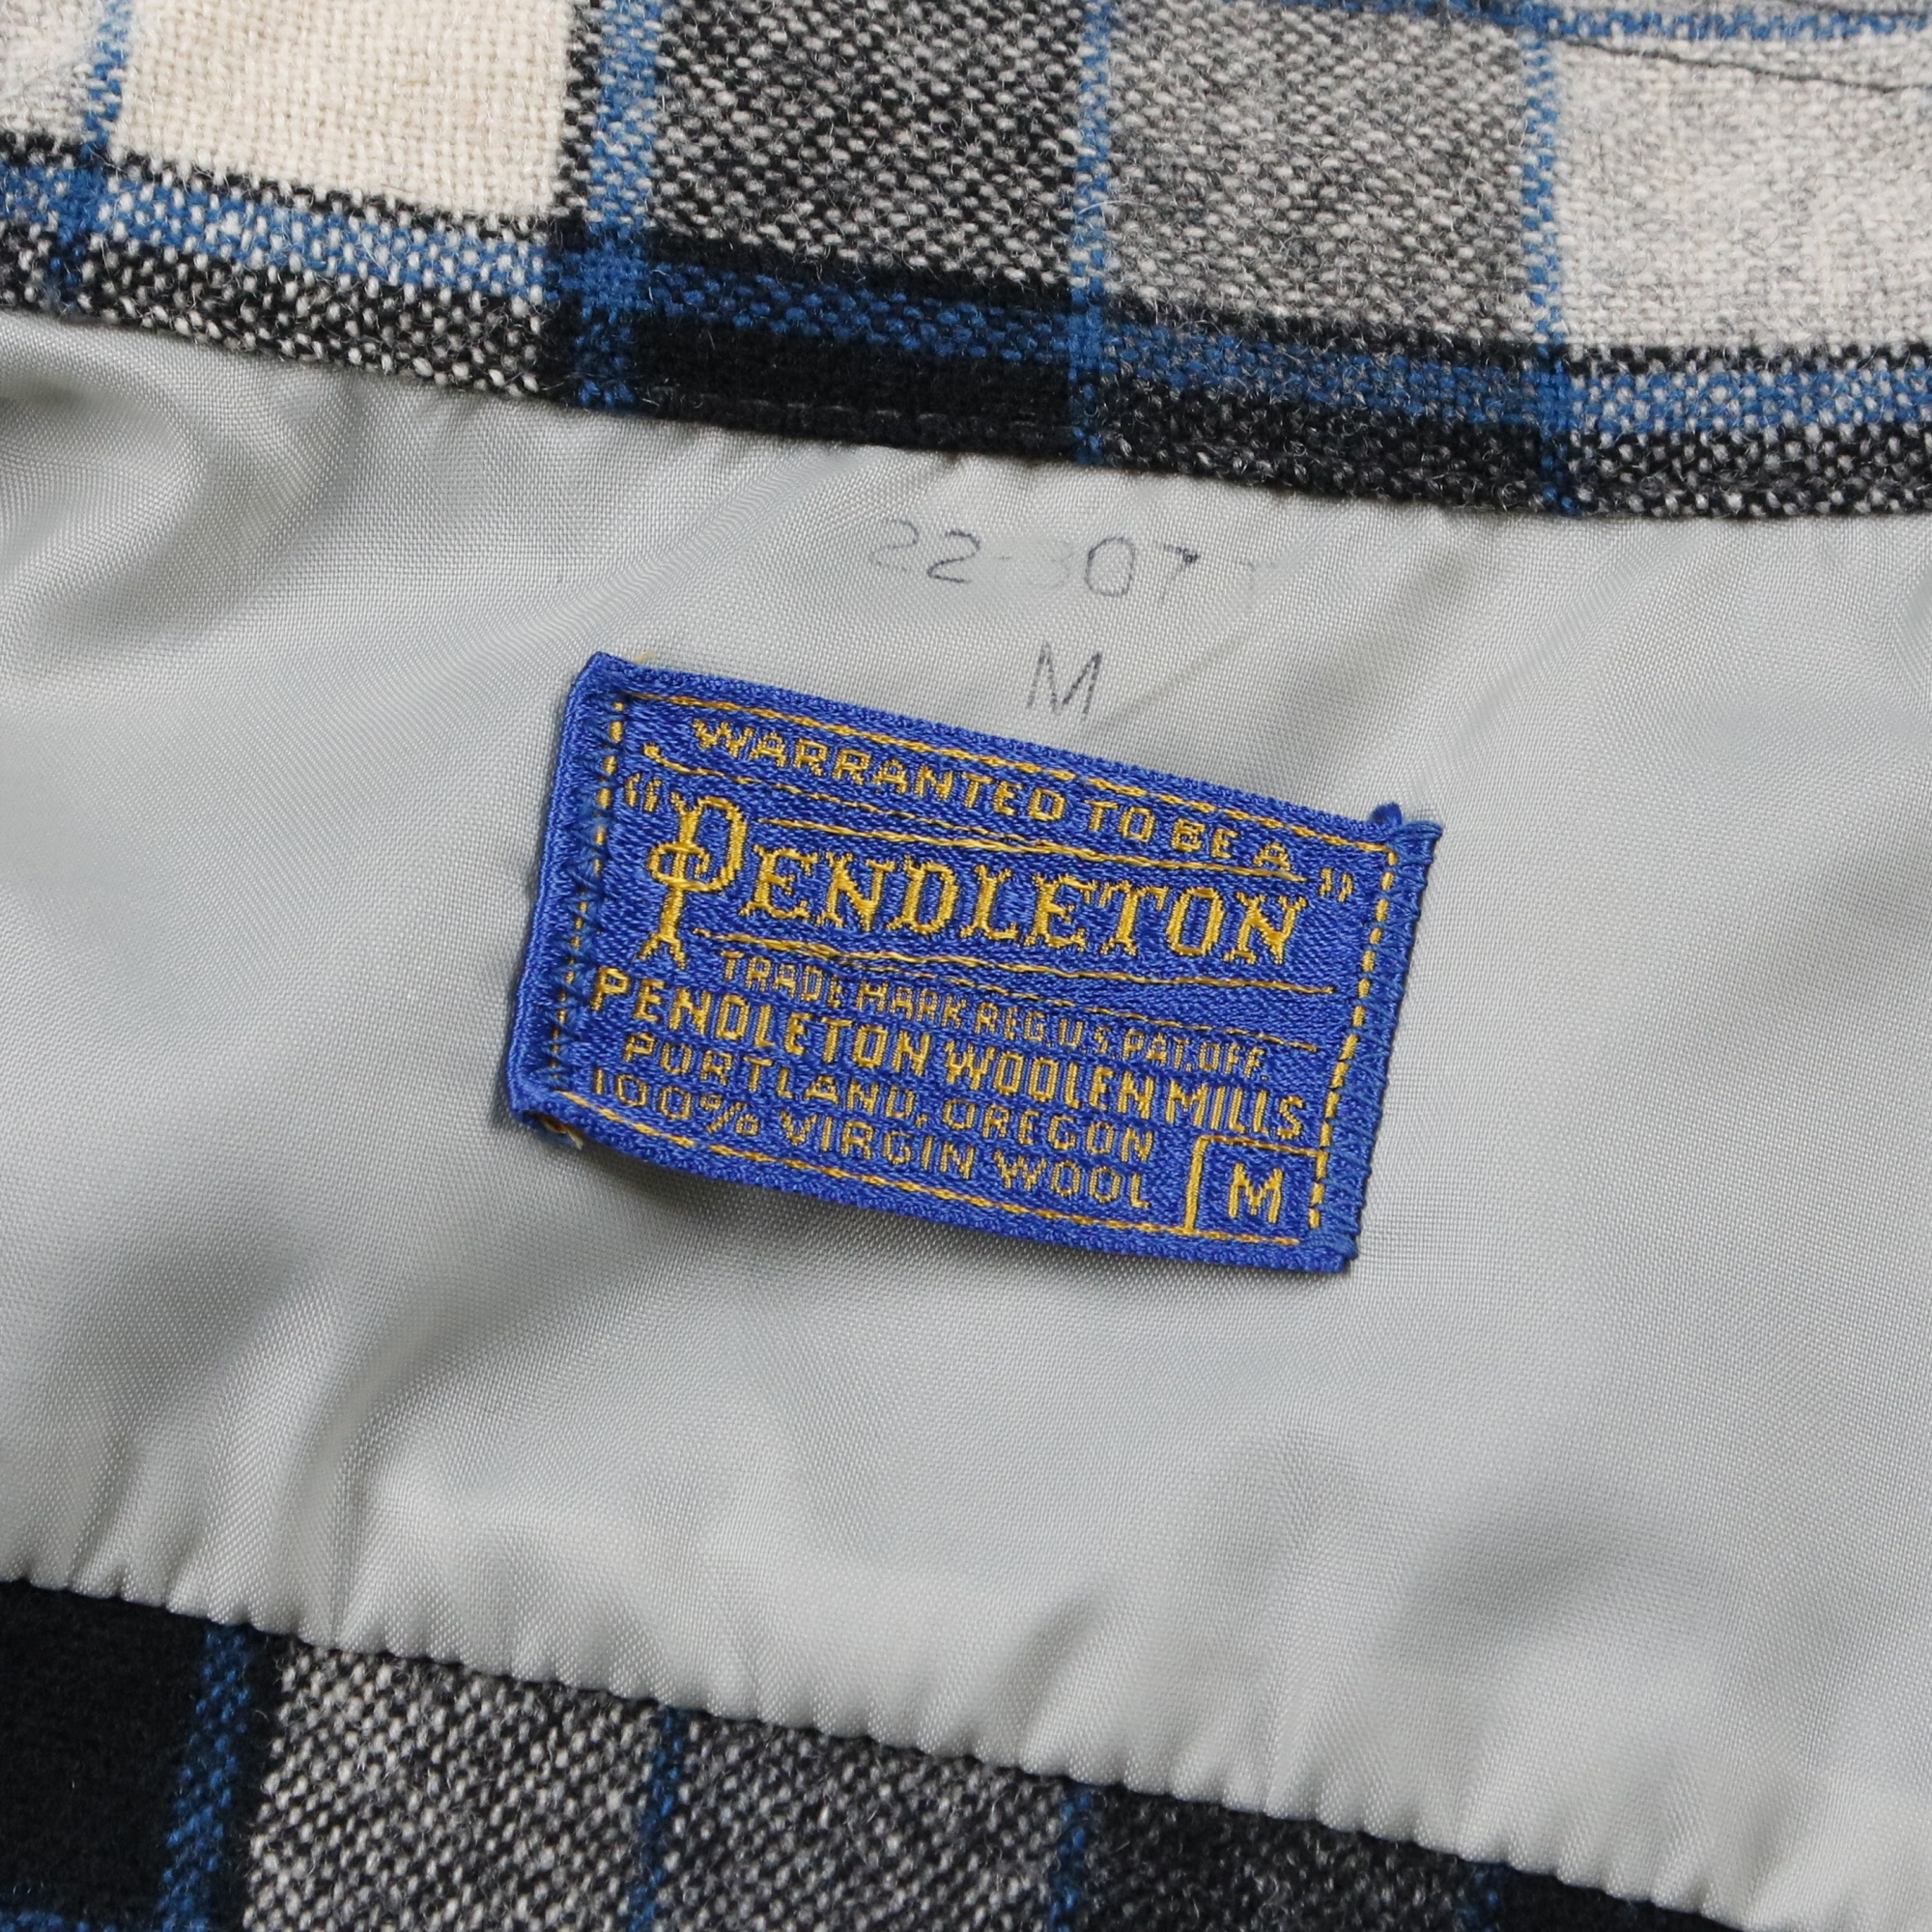 50s  Pendleton ペンドルトン wool shirt vintage